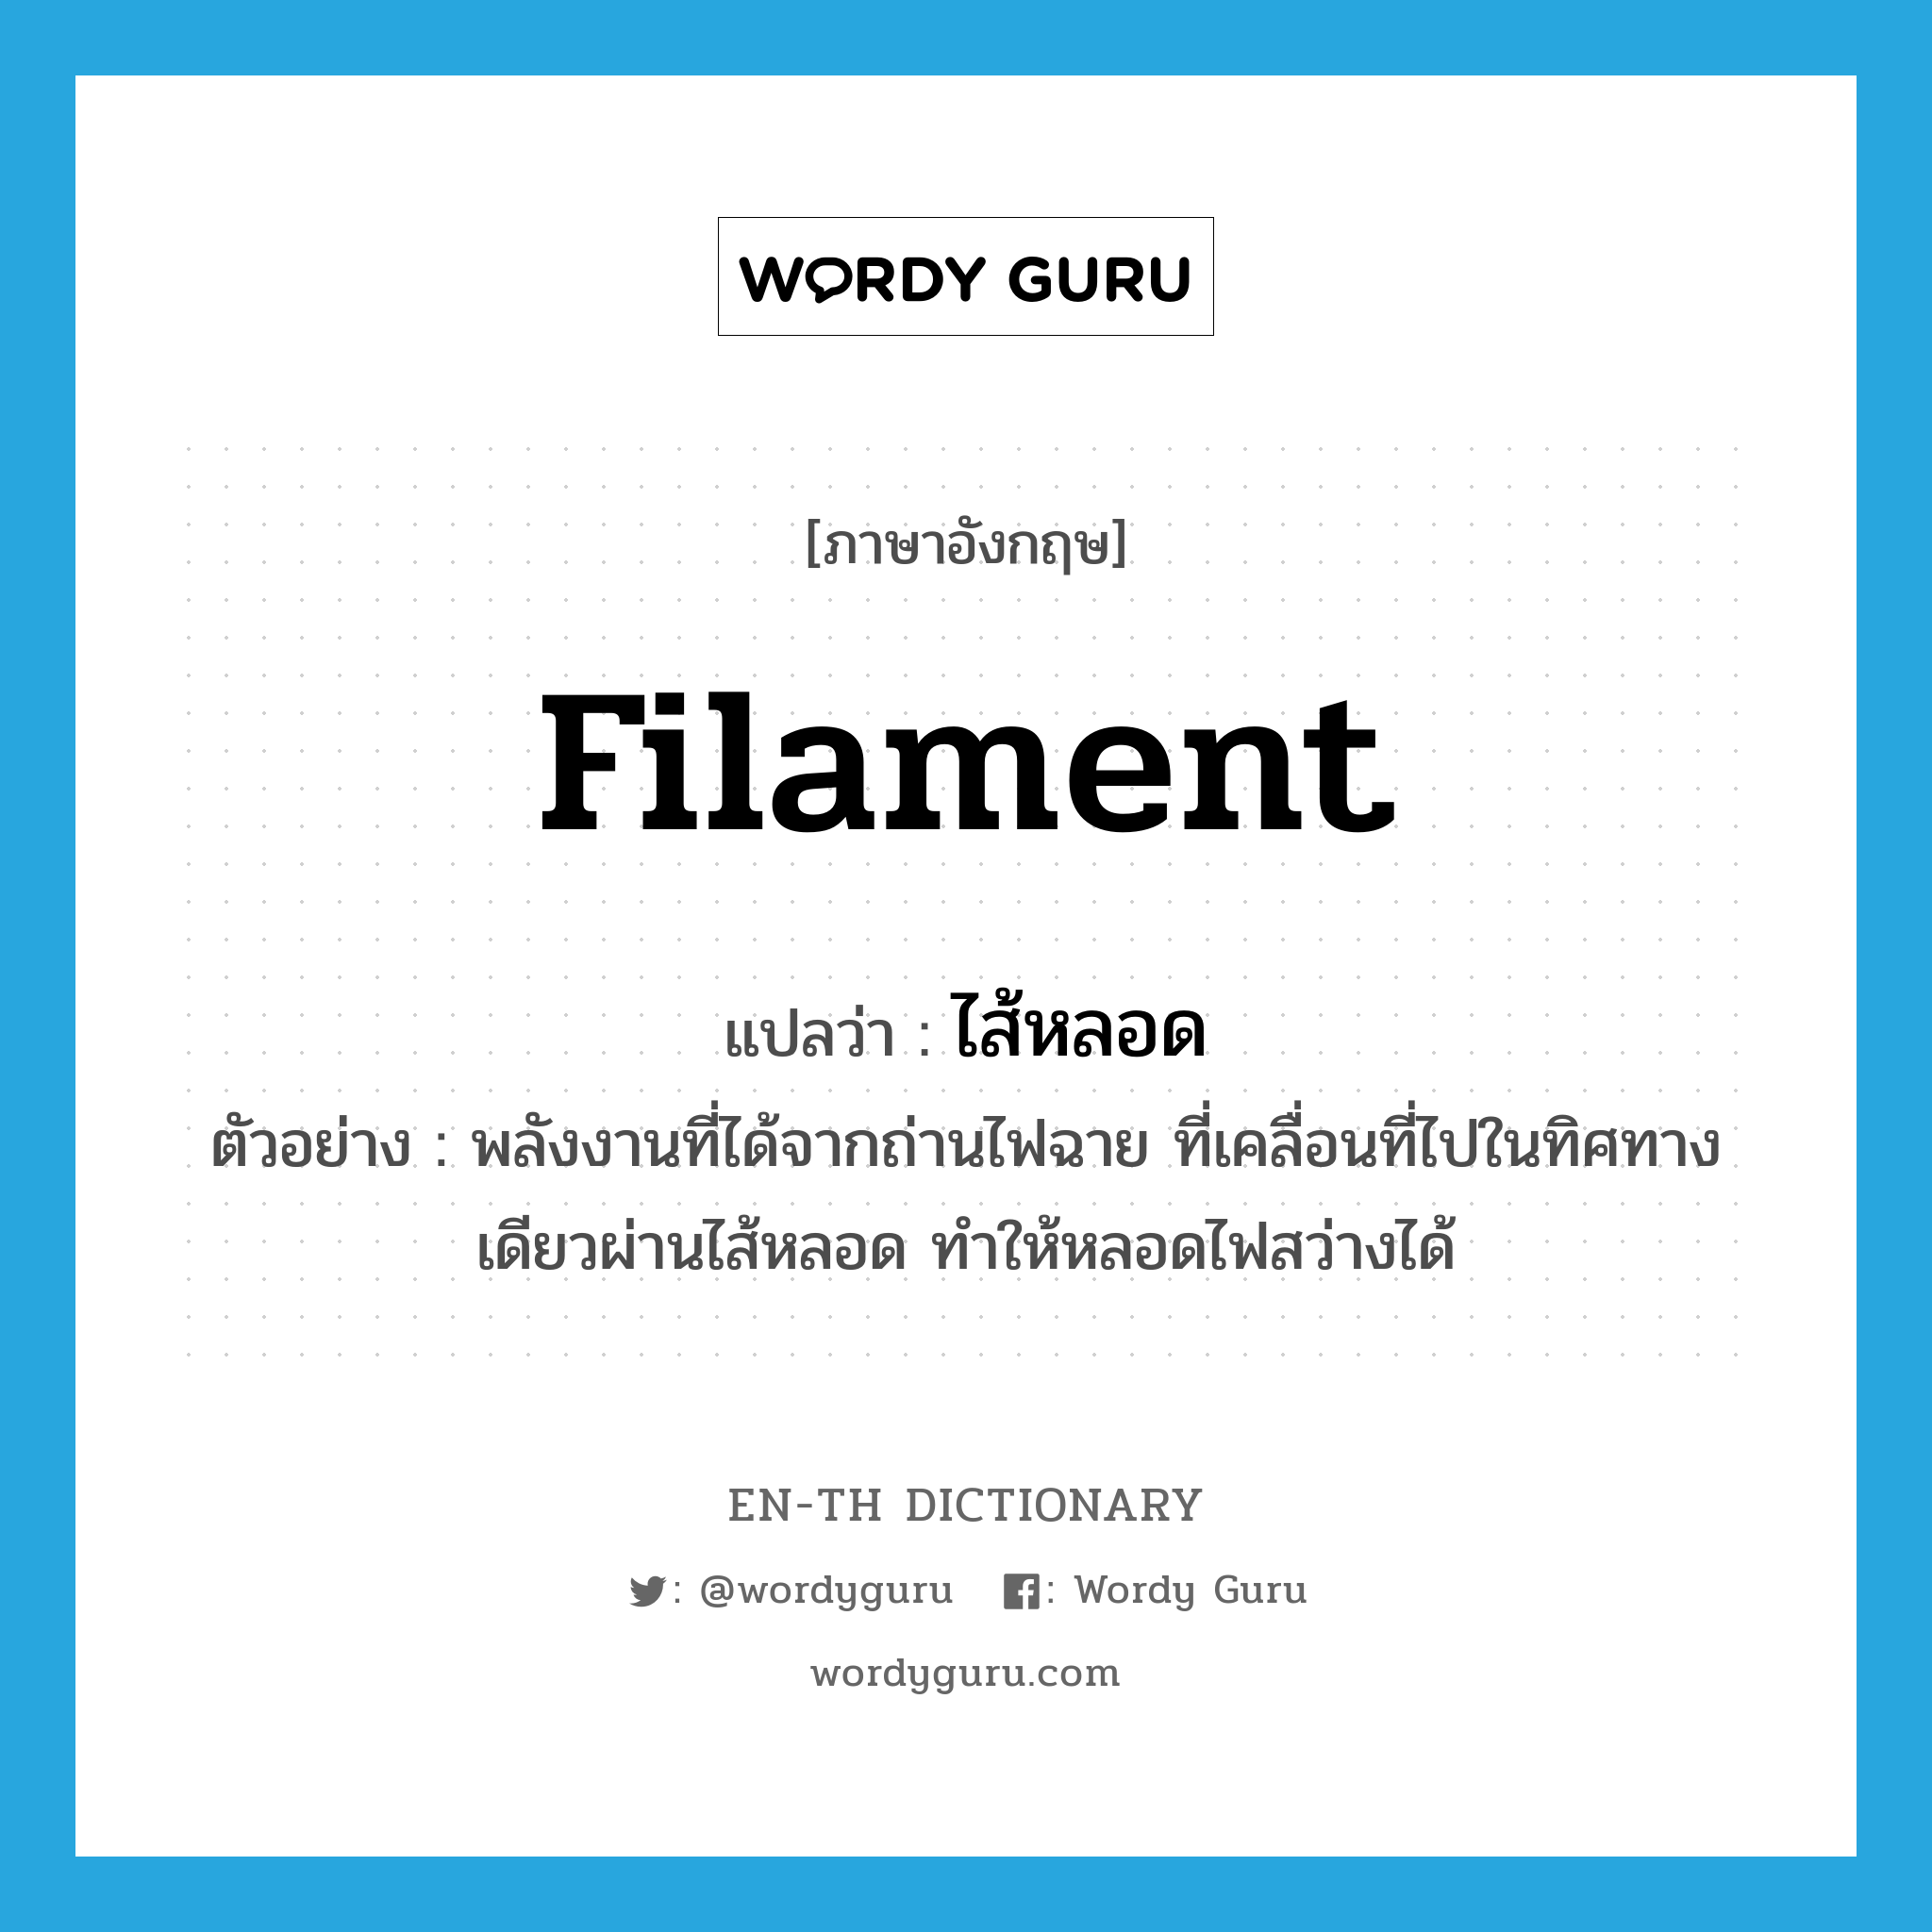 filament แปลว่า?, คำศัพท์ภาษาอังกฤษ filament แปลว่า ไส้หลอด ประเภท N ตัวอย่าง พลังงานที่ได้จากถ่านไฟฉาย ที่เคลื่อนที่ไปในทิศทางเดียวผ่านไส้หลอด ทำให้หลอดไฟสว่างได้ หมวด N